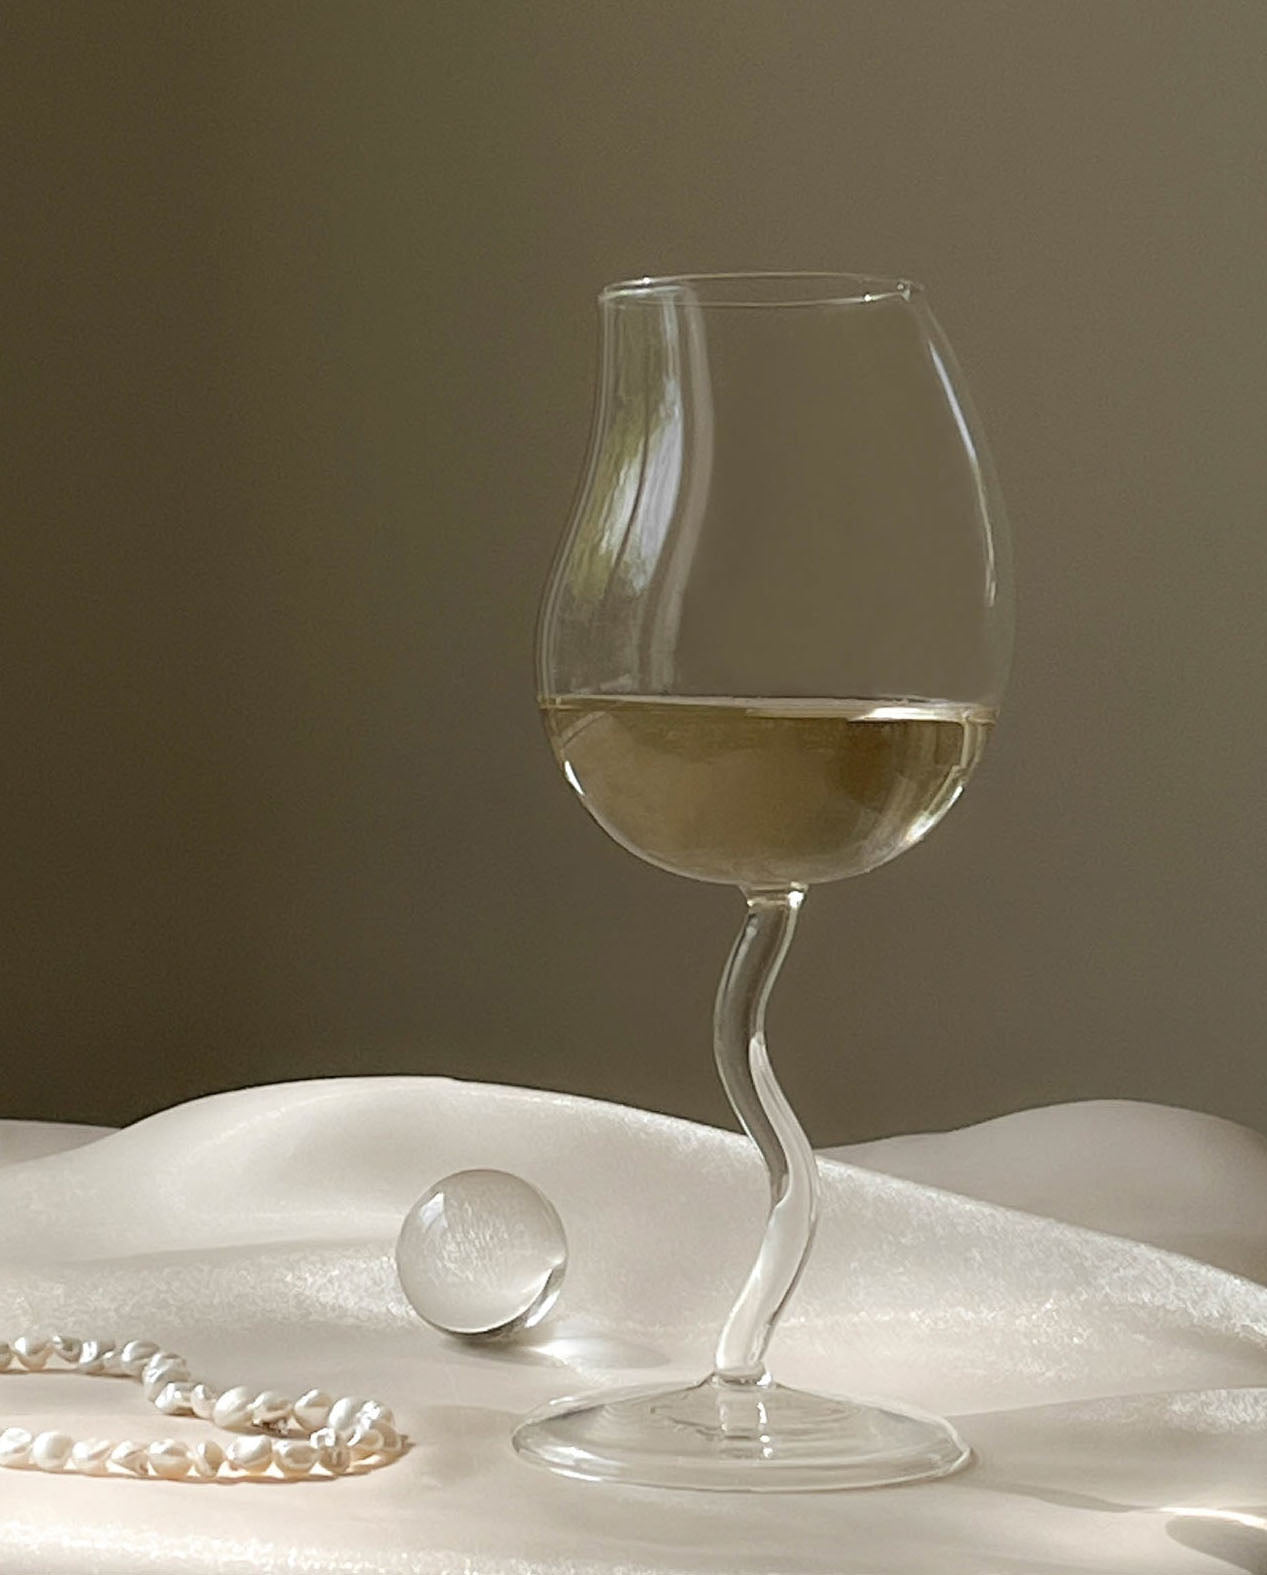 Pear Wine Glass from maija